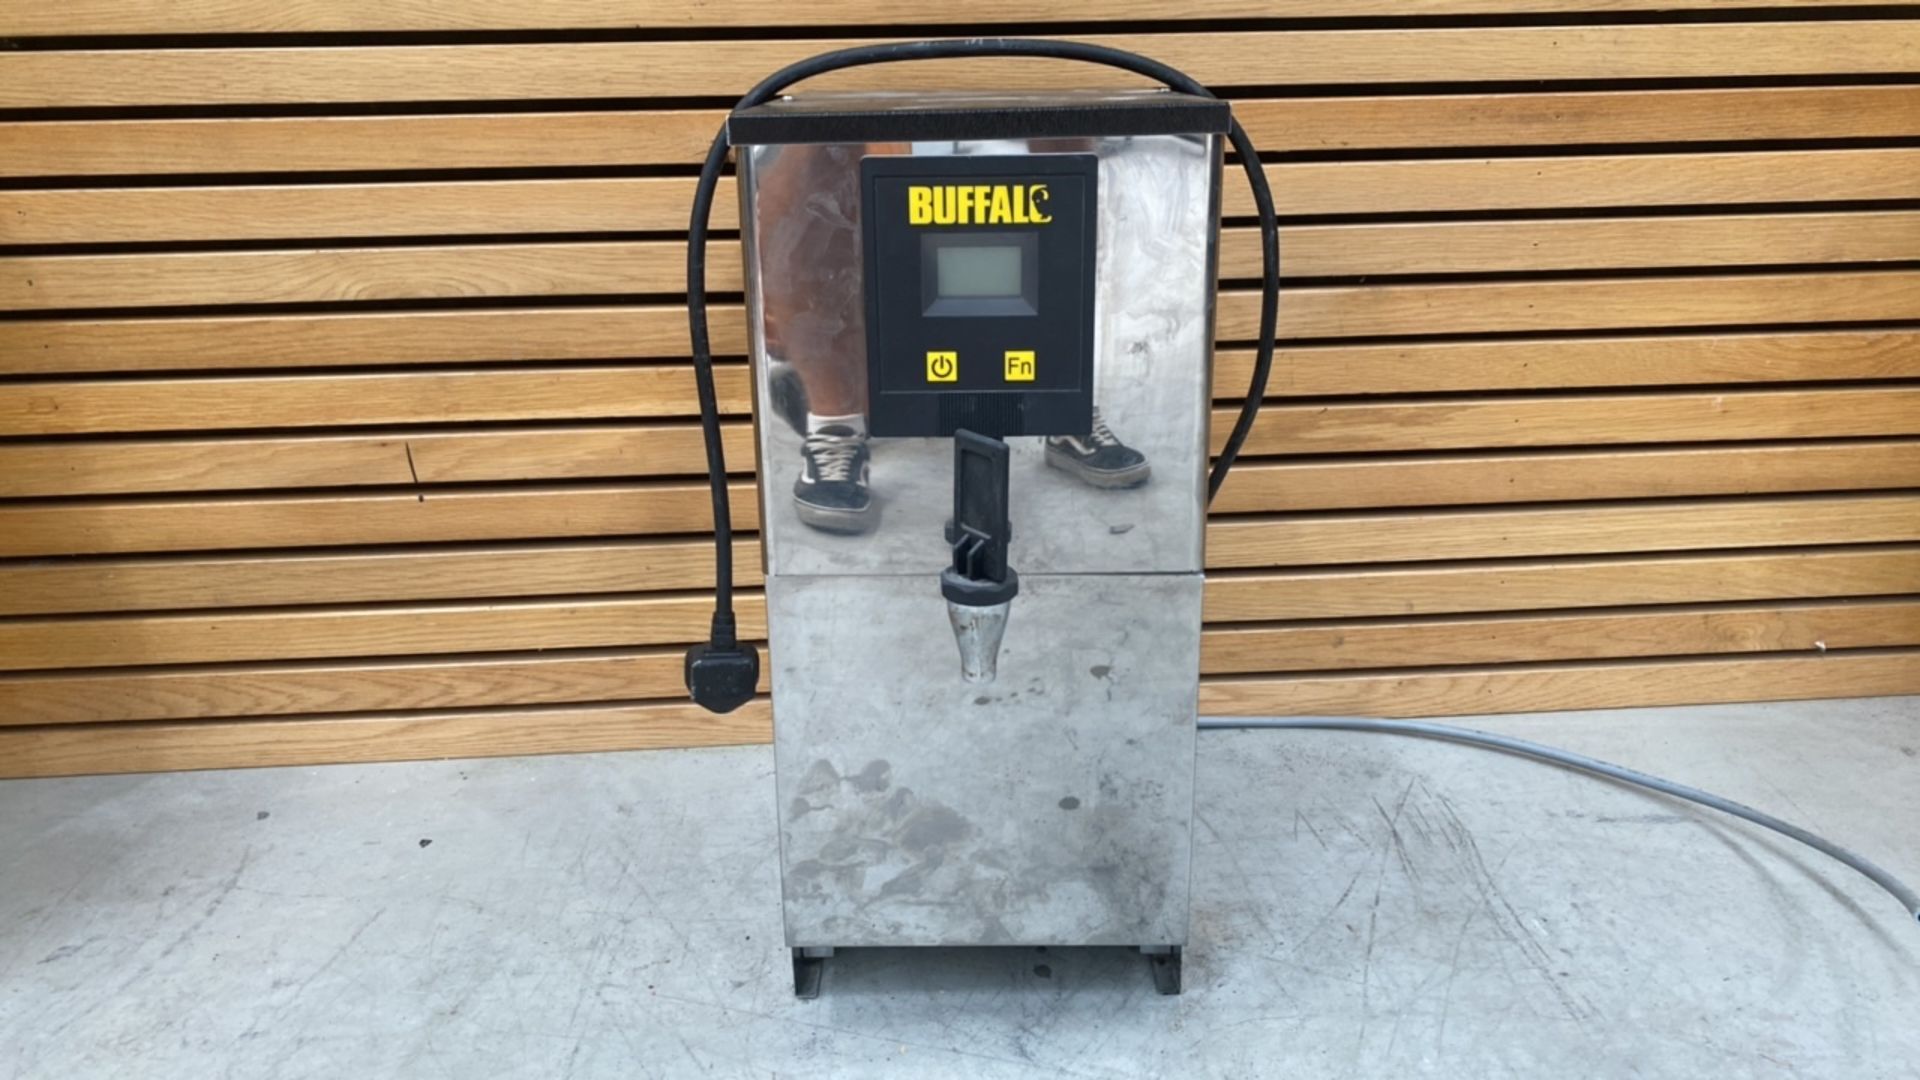 Buffalo Hot Water Dispenser